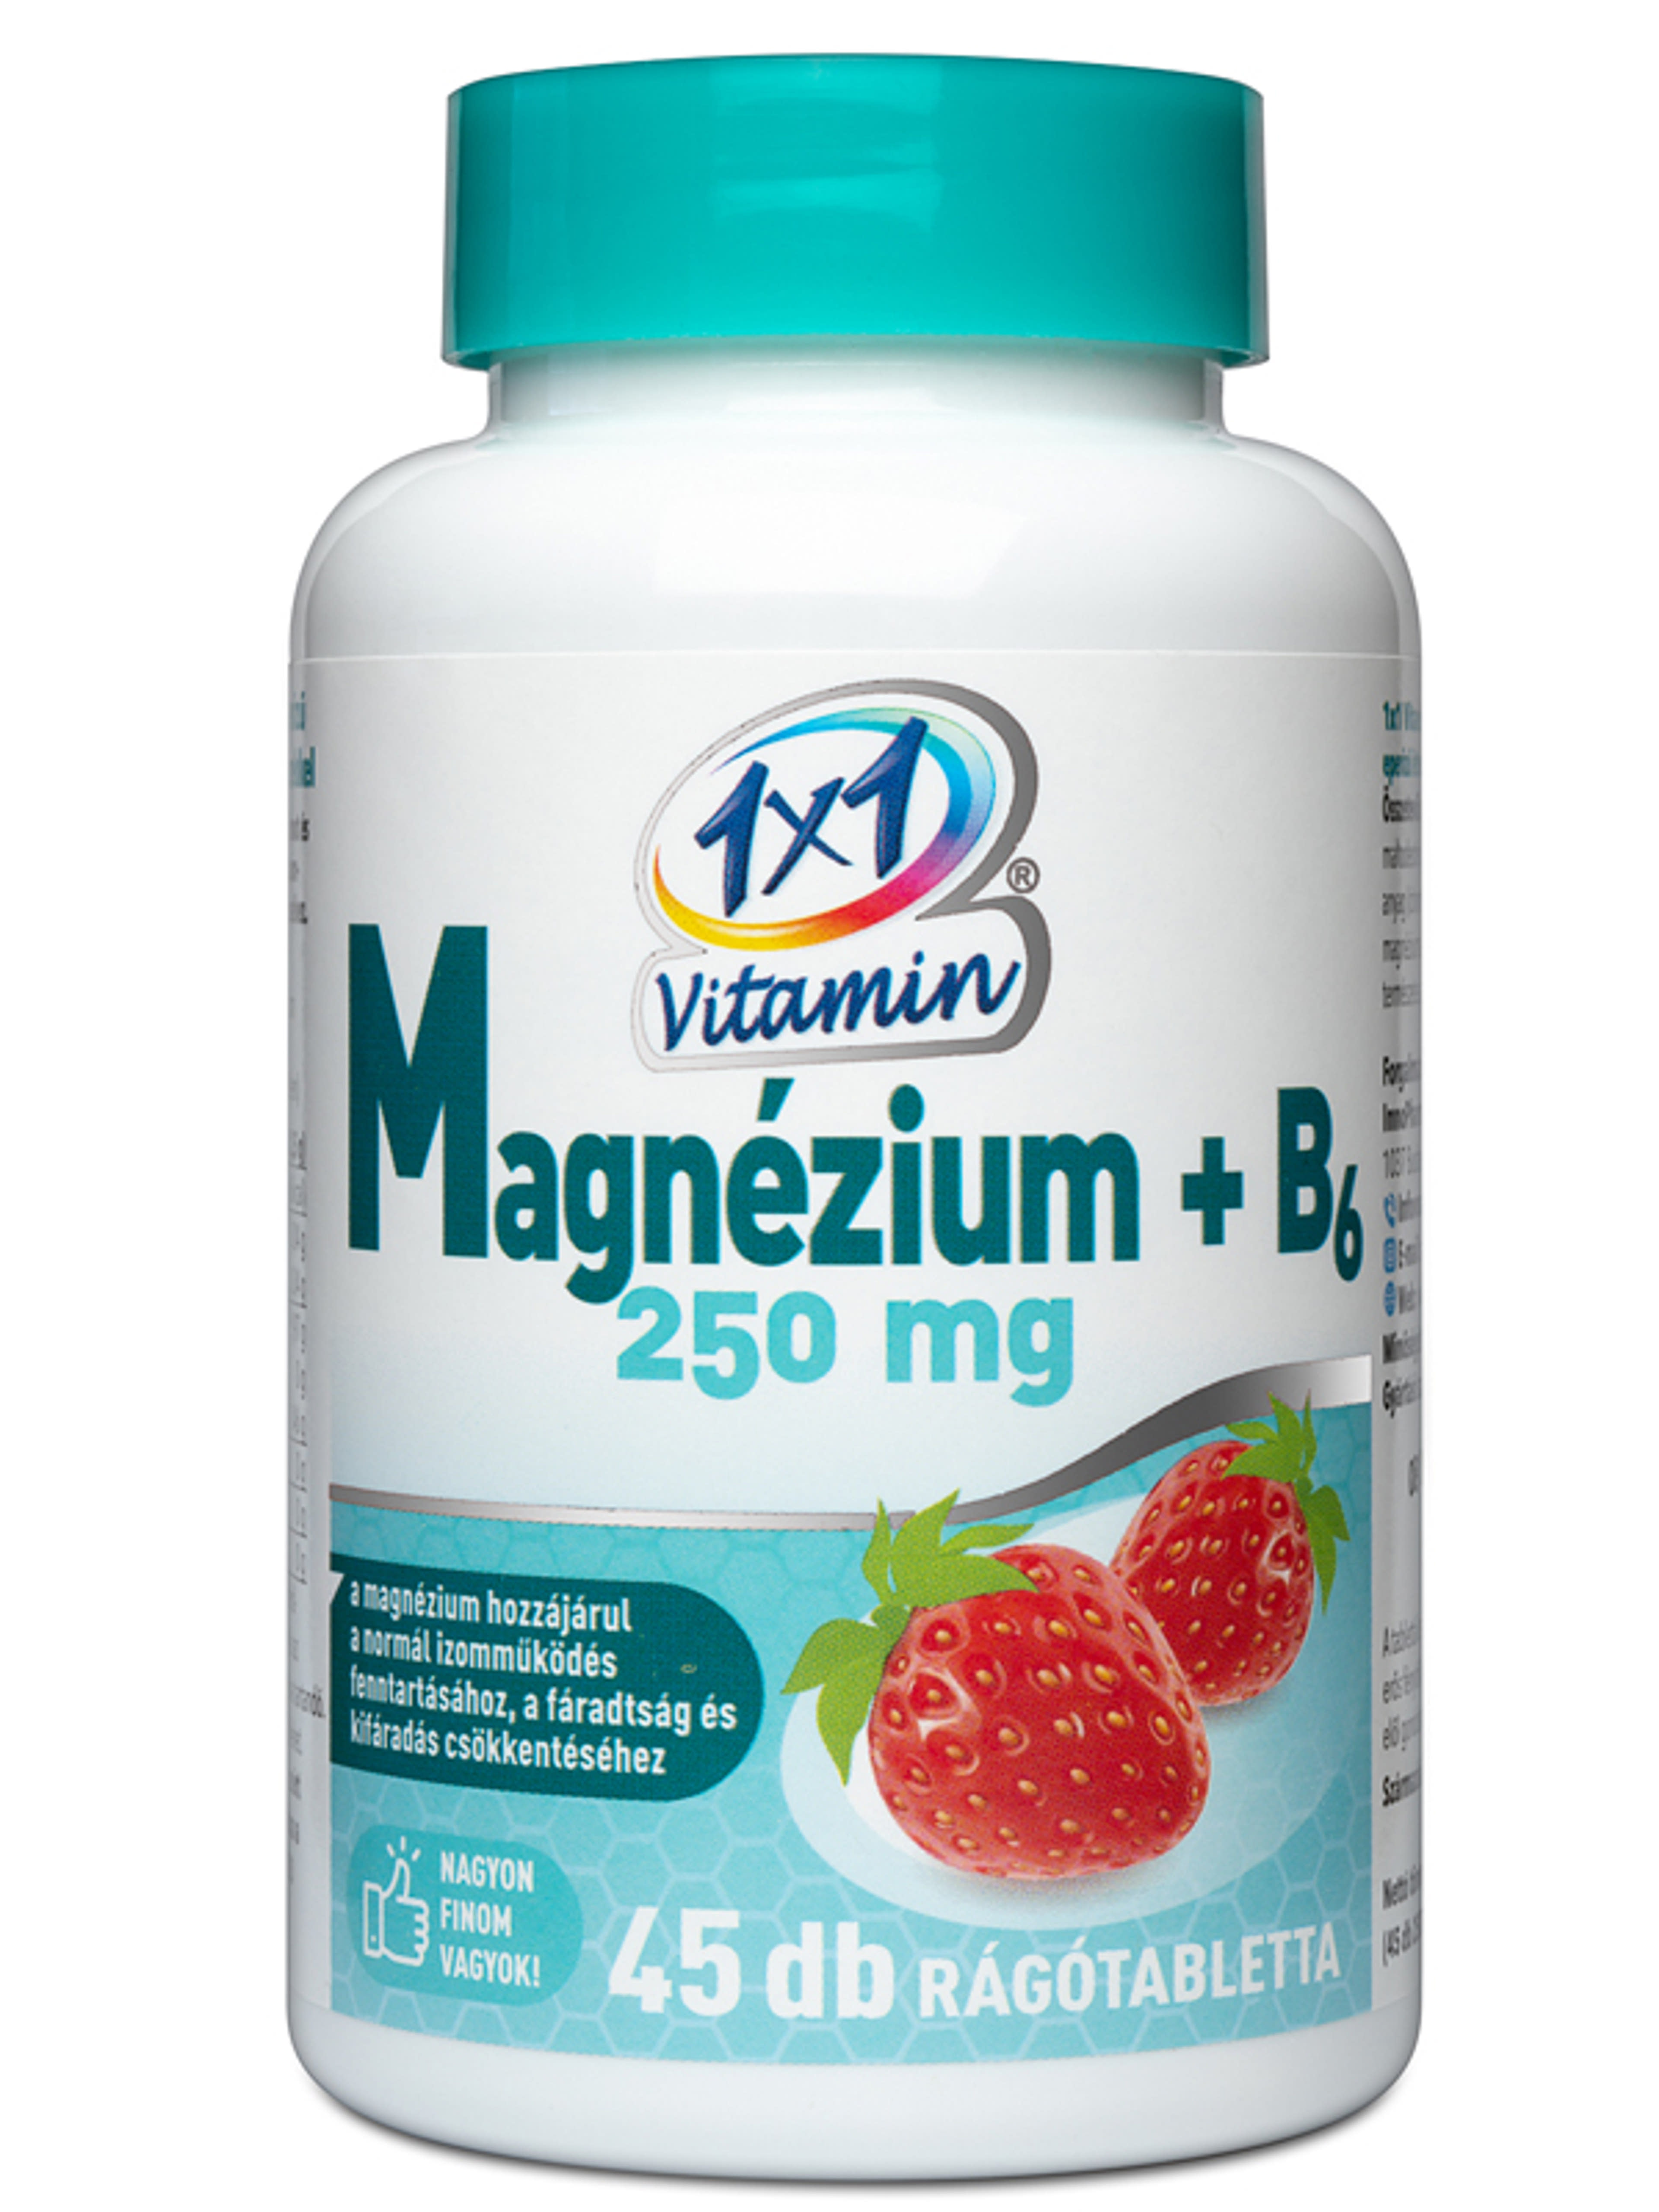 1x1 Vitamin Magnézium +B6 250mg rágótabletta epres - 45 db-1